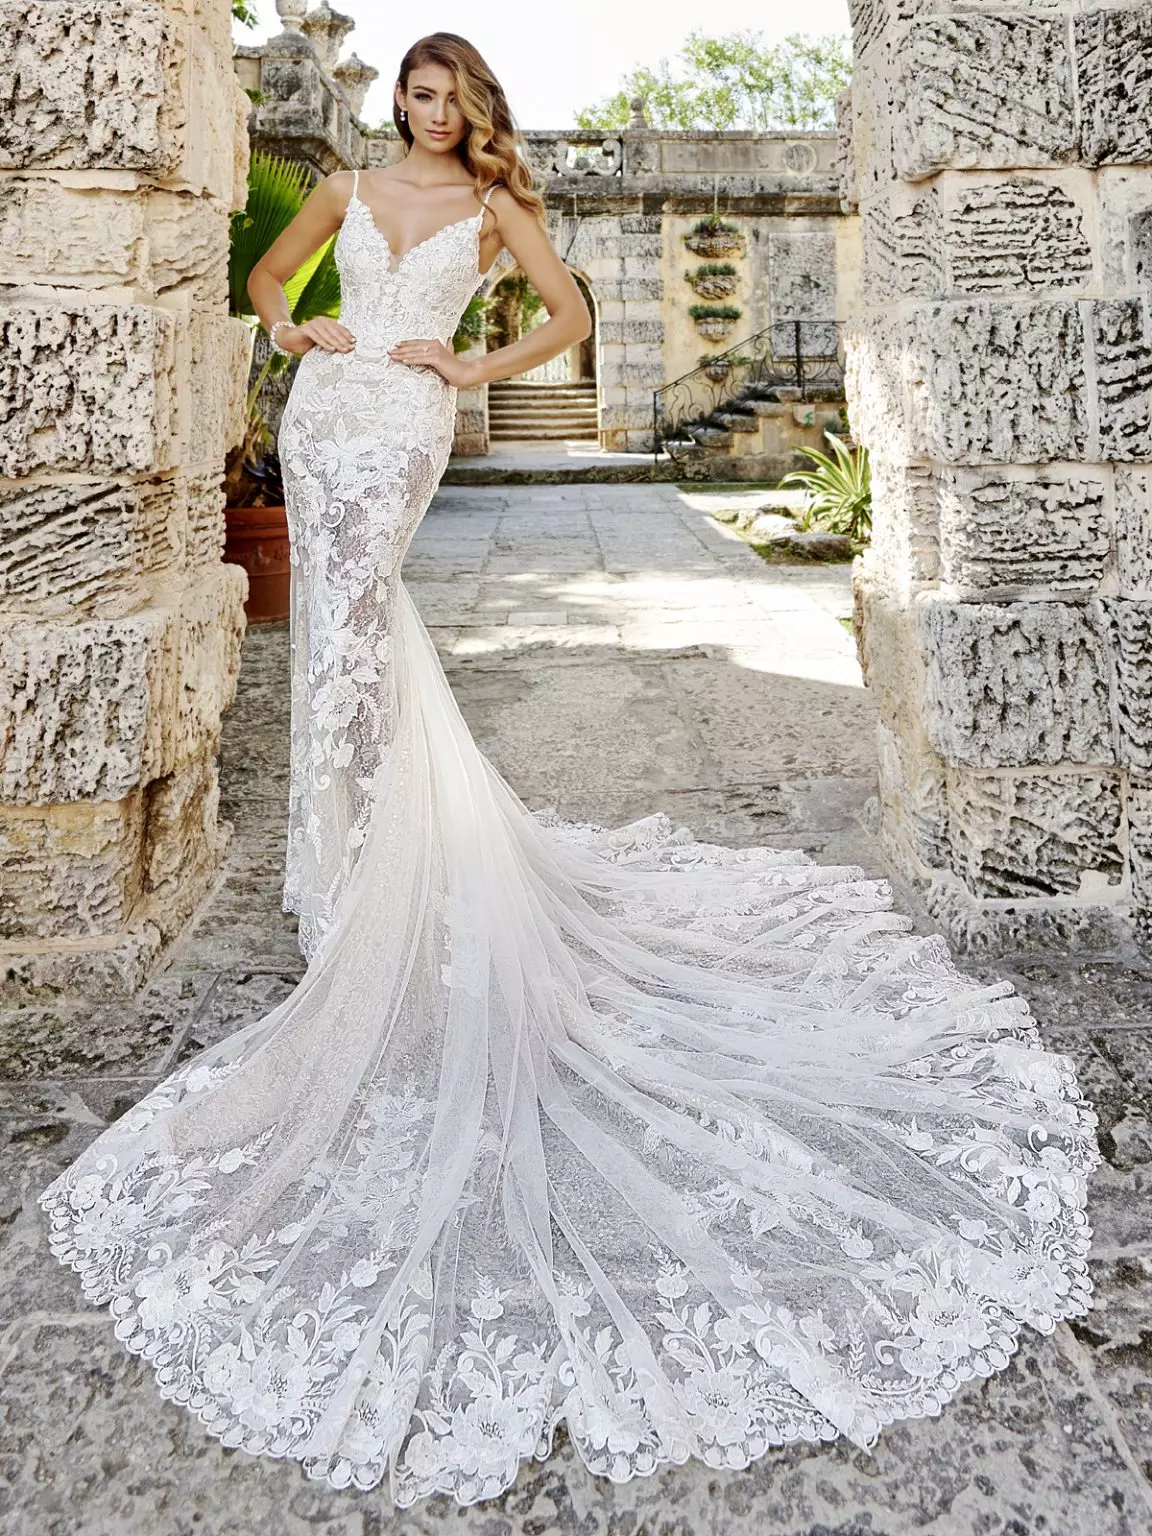 Mulher usando um vestido de noiva branco, modelo sereia com cauda longa. Ela faz uma pose para a foto com as mãos na cintura.